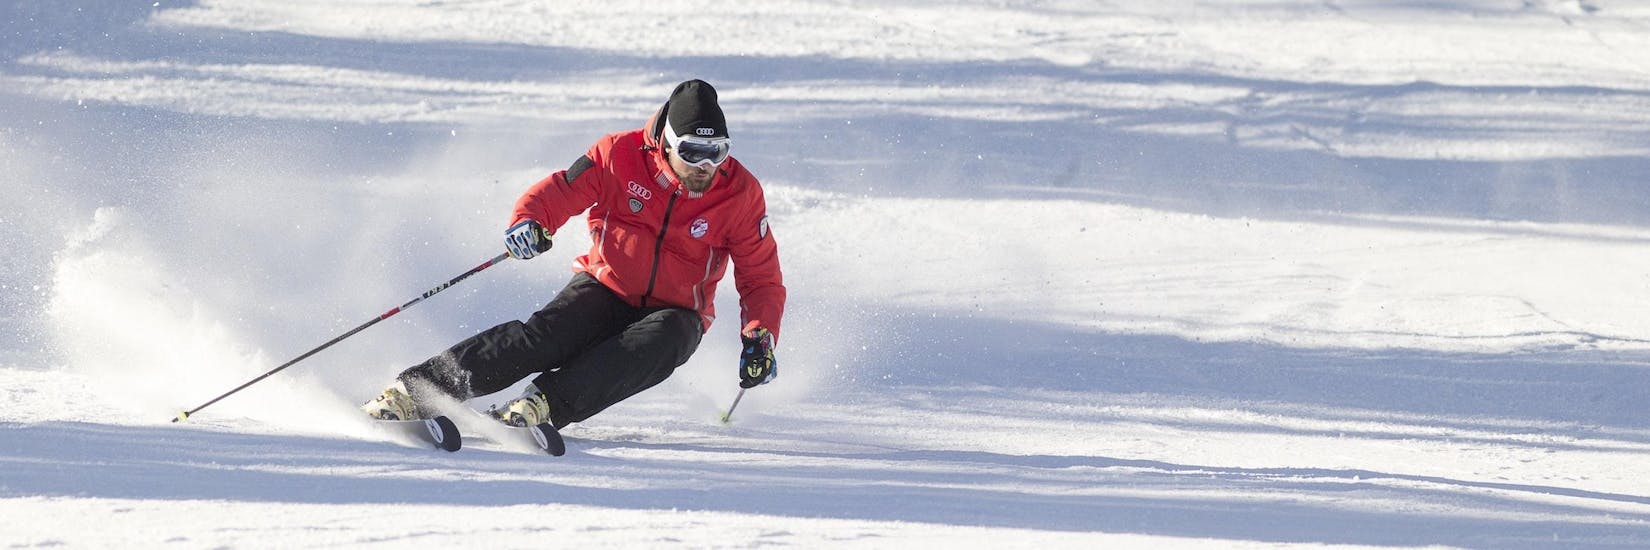 Un moniteur de ski de la Scuola Sci Cortina fait la démonstration de la bonne technique de ski pendant l'un des cours d'initiation au ski pour adultes dans la station de ski de Cortina d'Ampezzo.